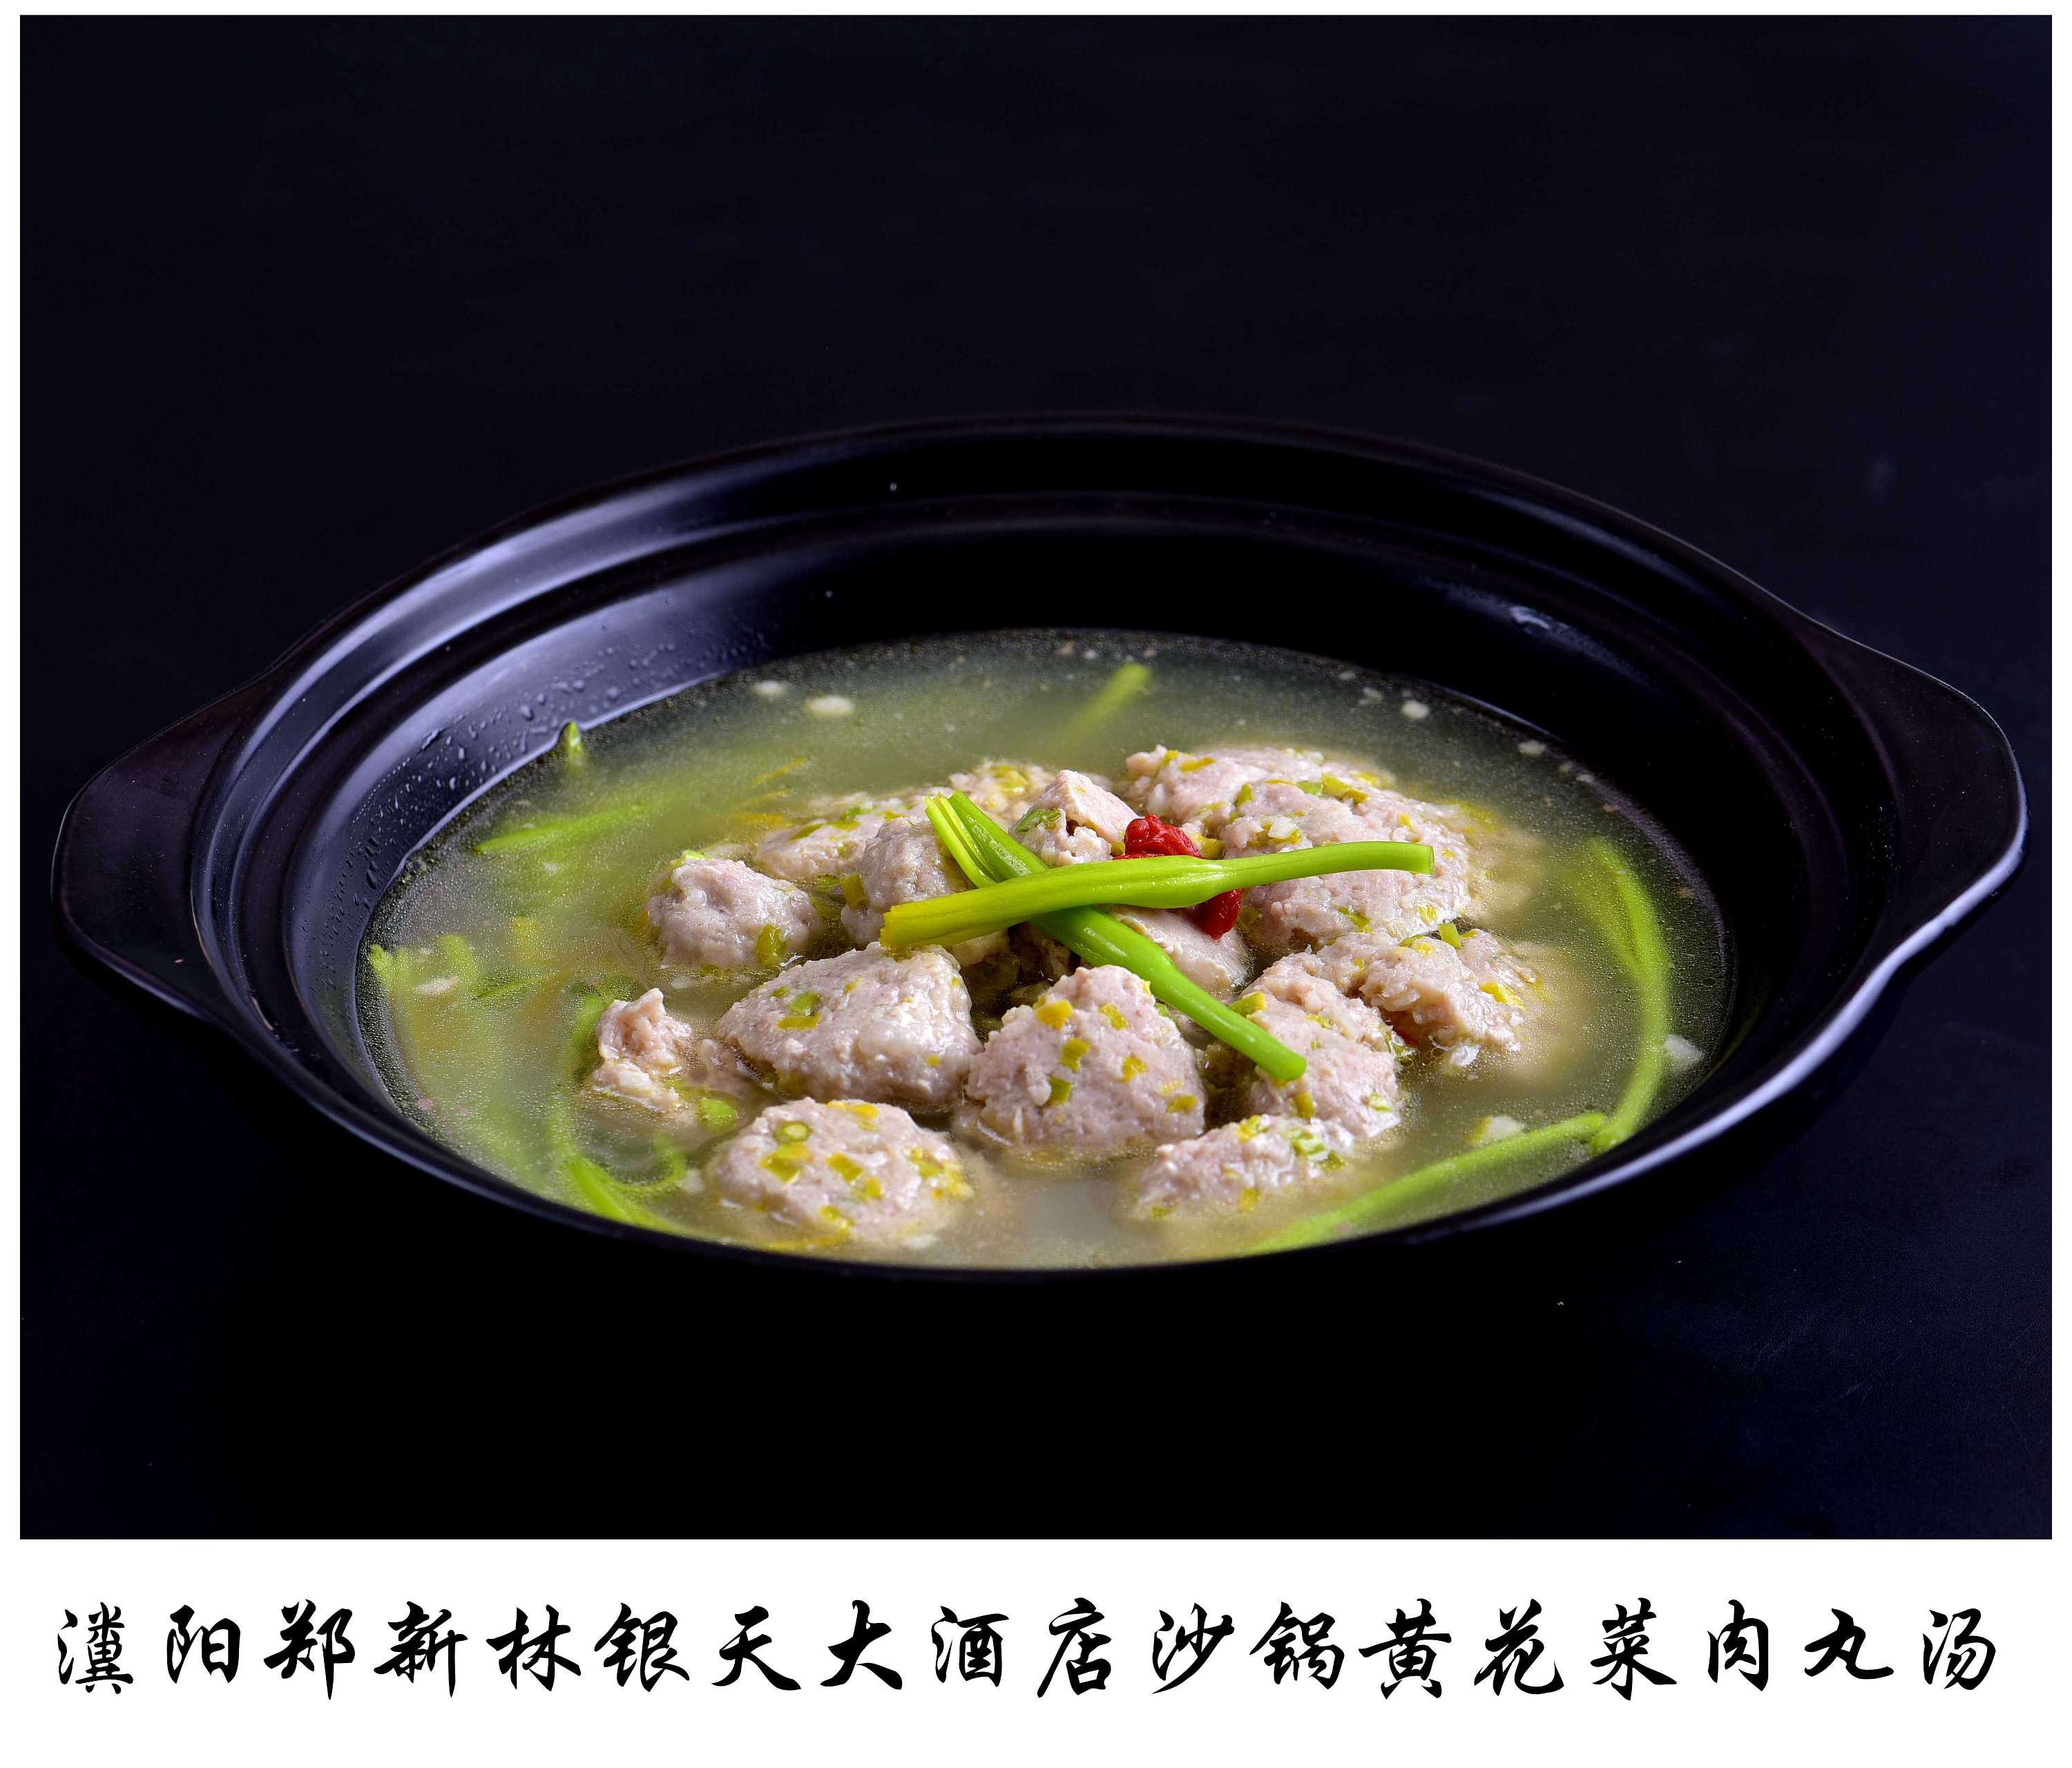 制作砂锅基围虾粥的食材准备及烹饪步骤详解